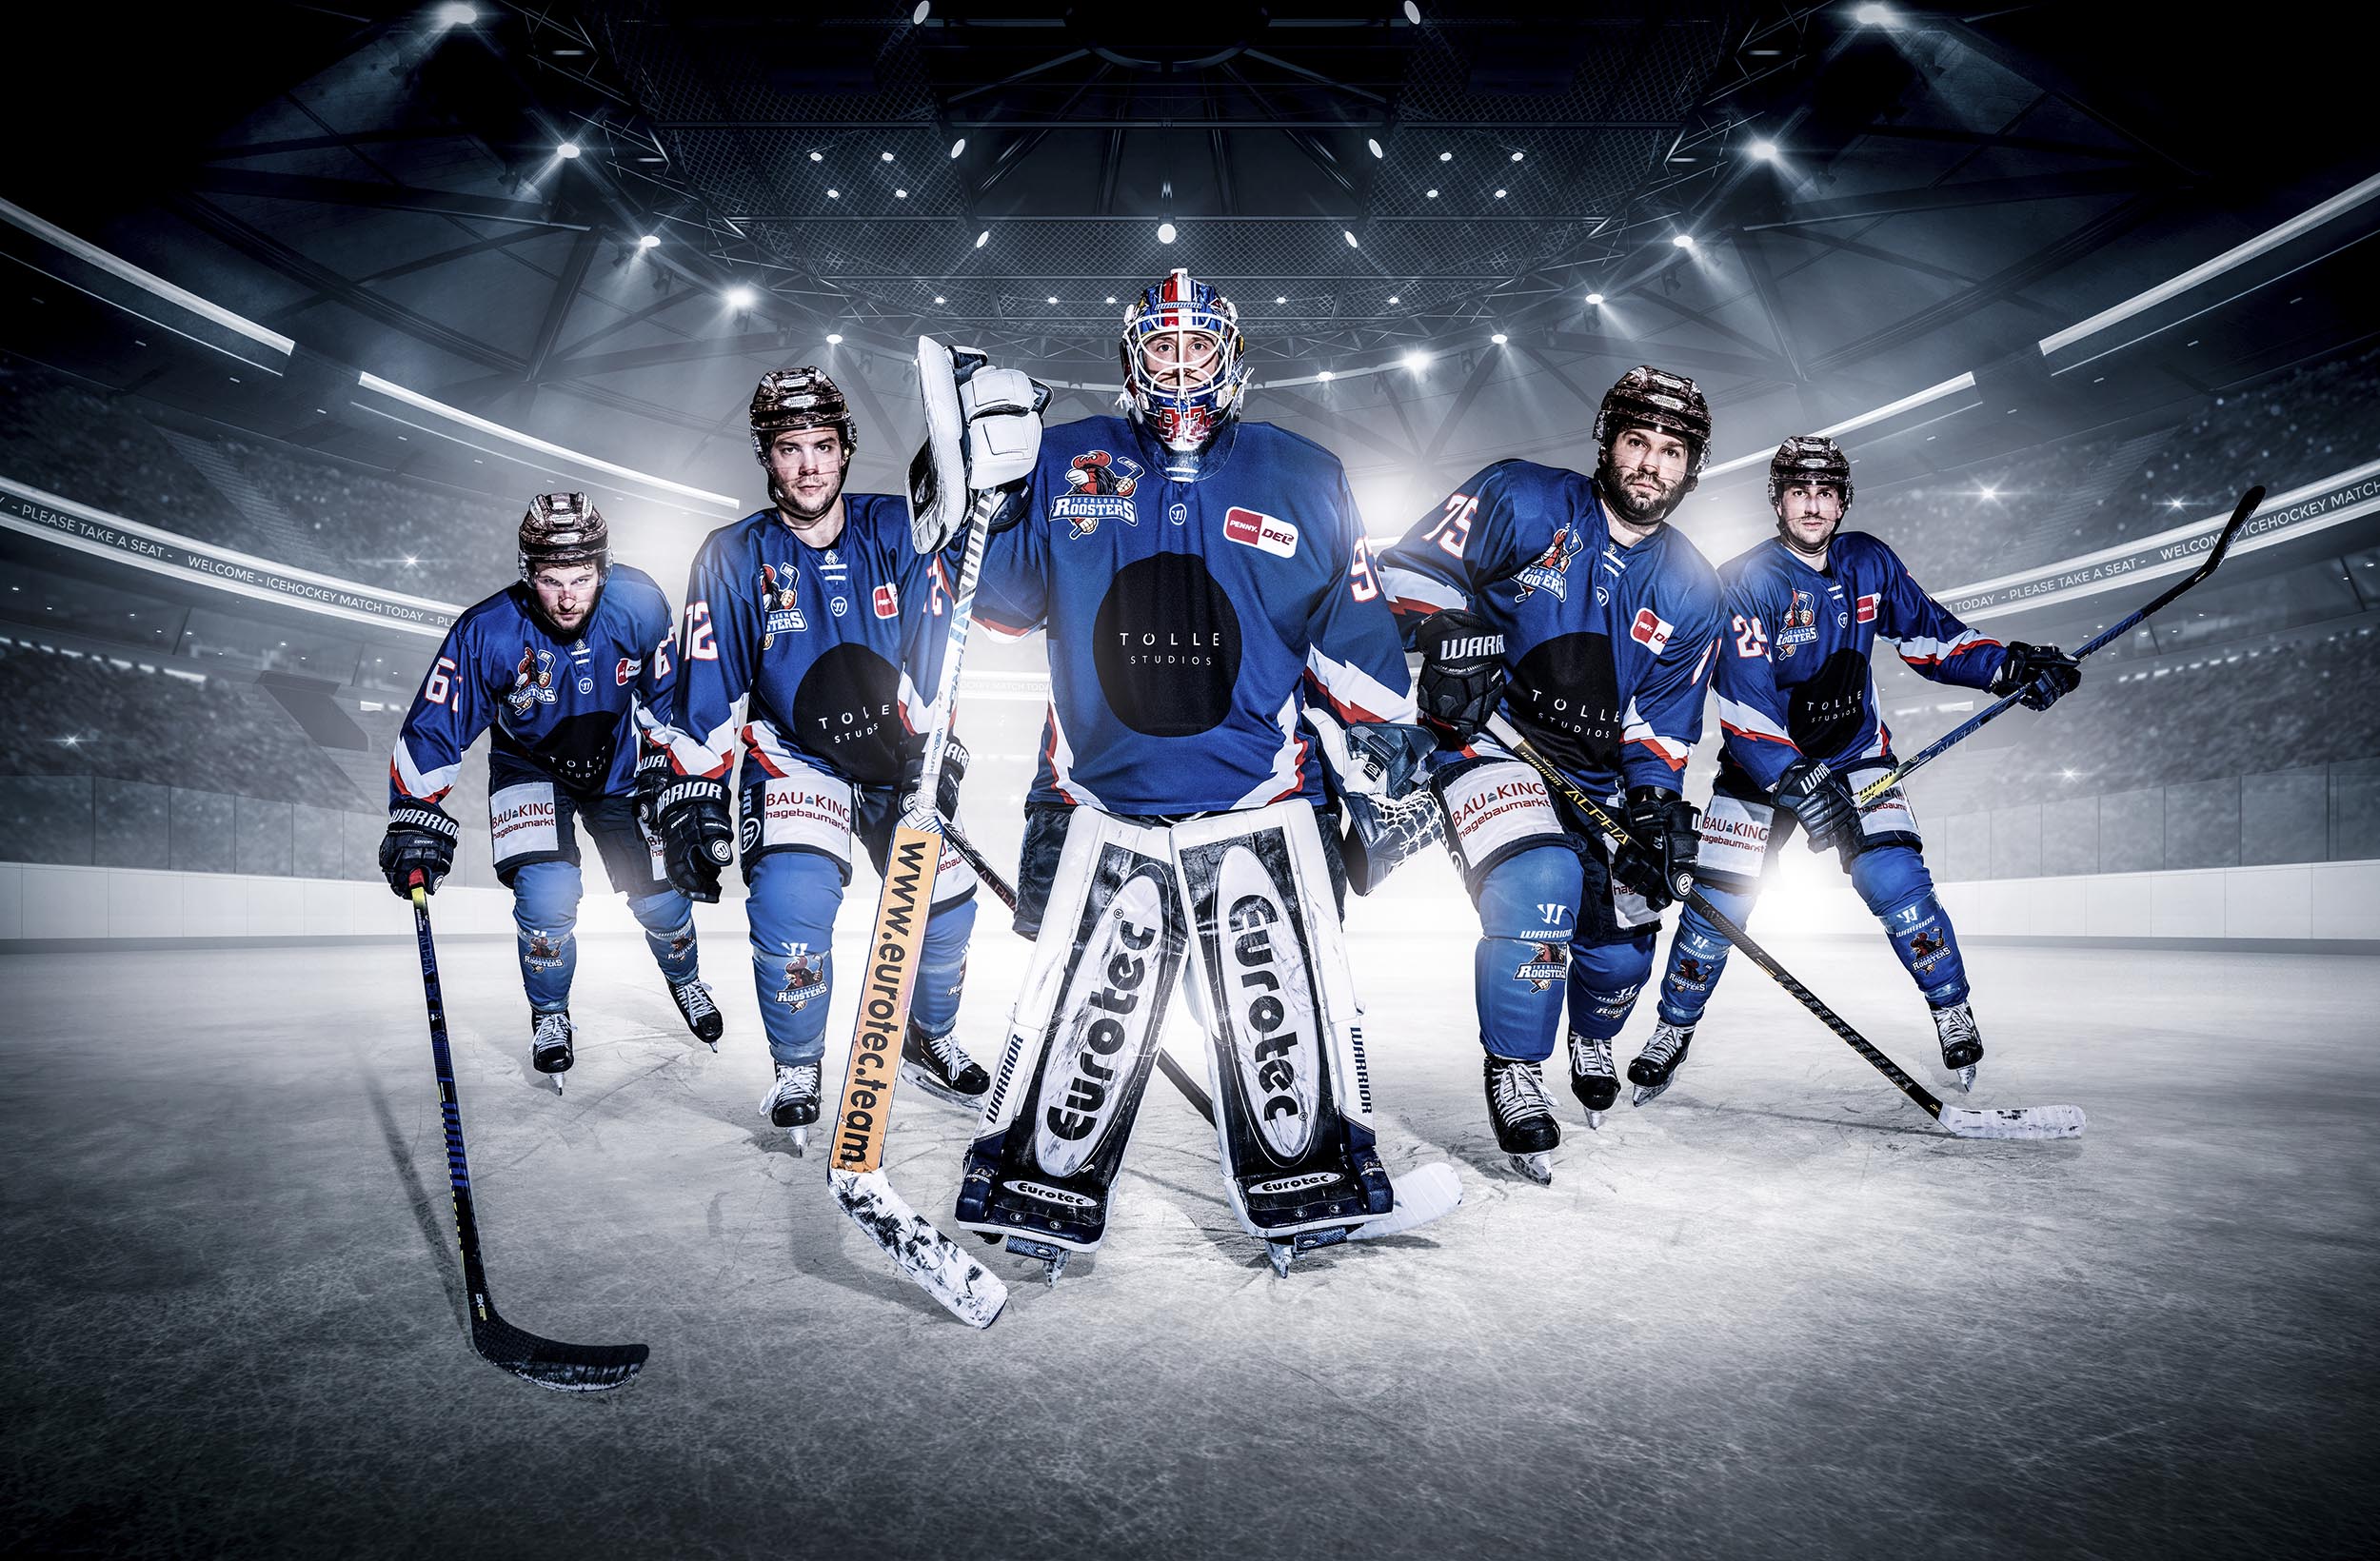  Eishockey Hintergrundbild 2500x1640. Support Your Locals. Tölle Studios